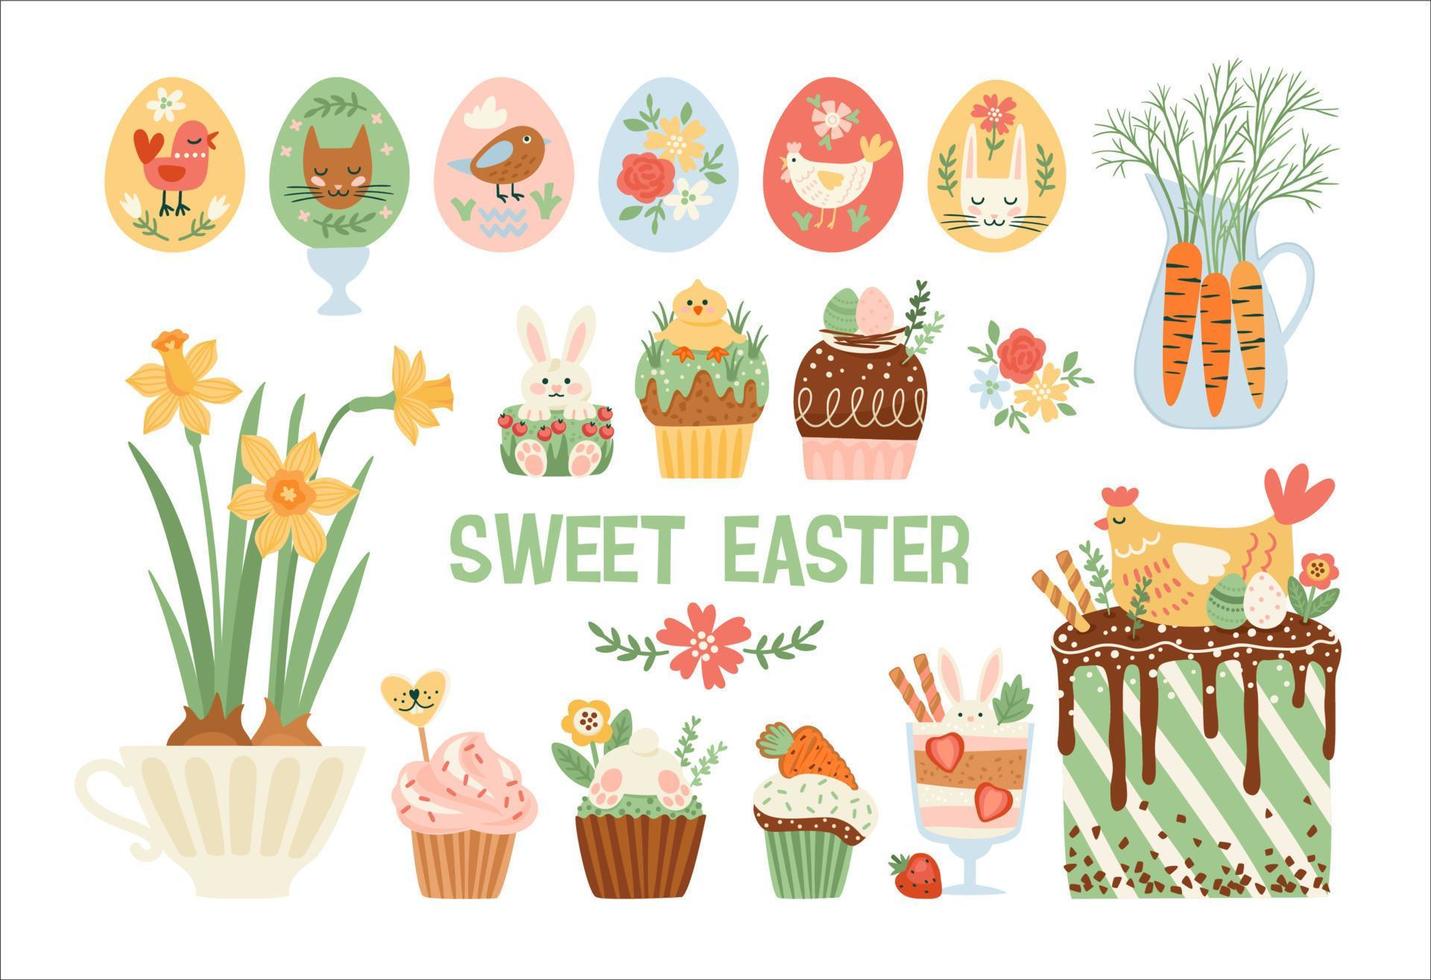 Pascua de Resurrección aislado ilustraciones. magdalena, pastel, postre con Pascua de Resurrección simbolos vector diseño plantillas.